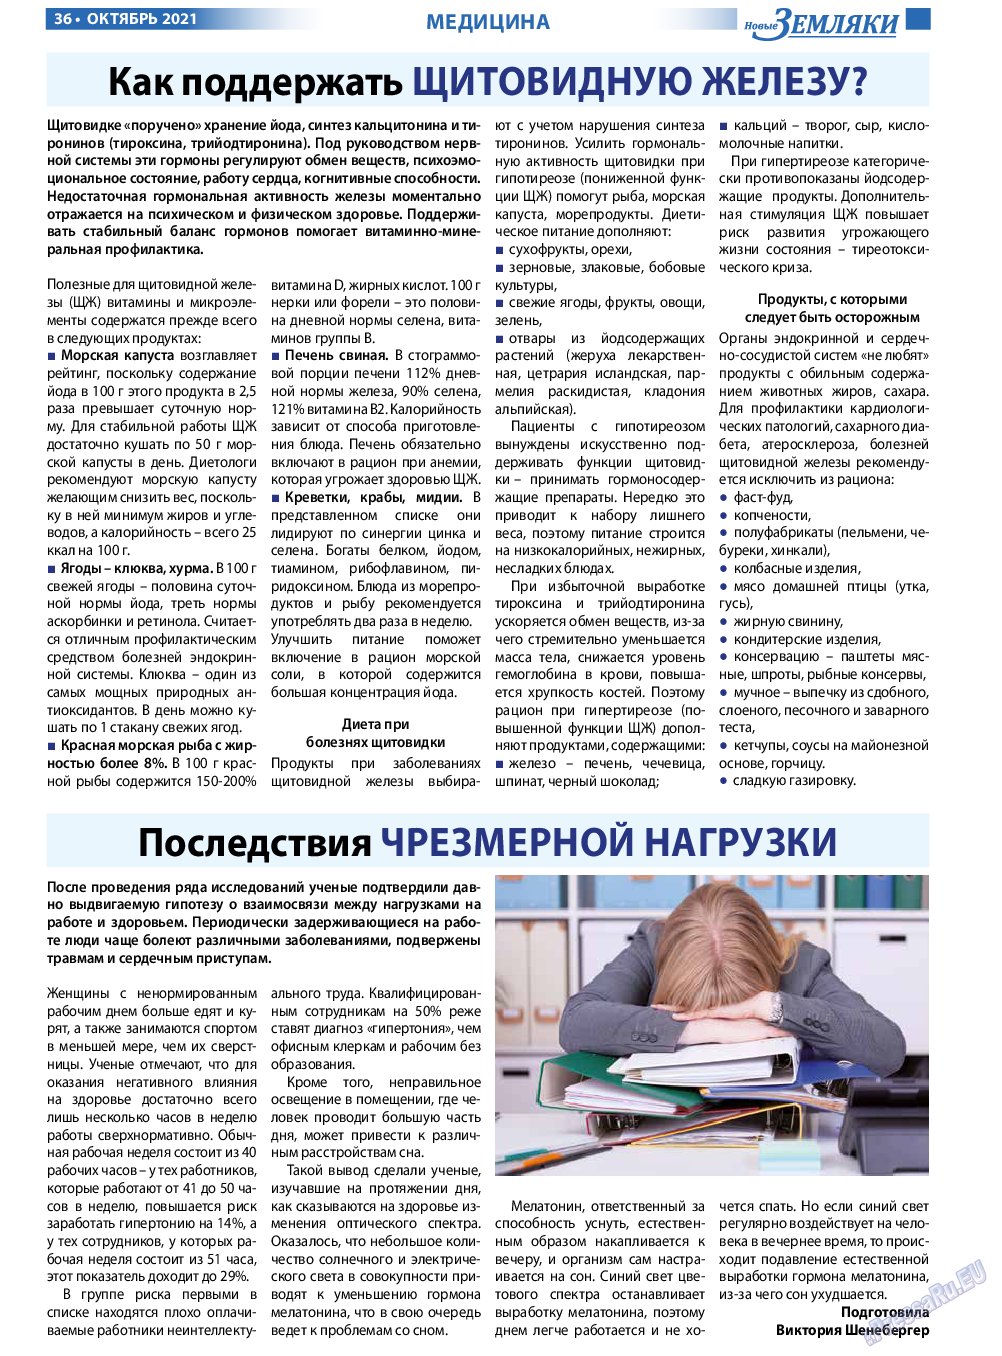 Новые Земляки, газета. 2021 №10 стр.36